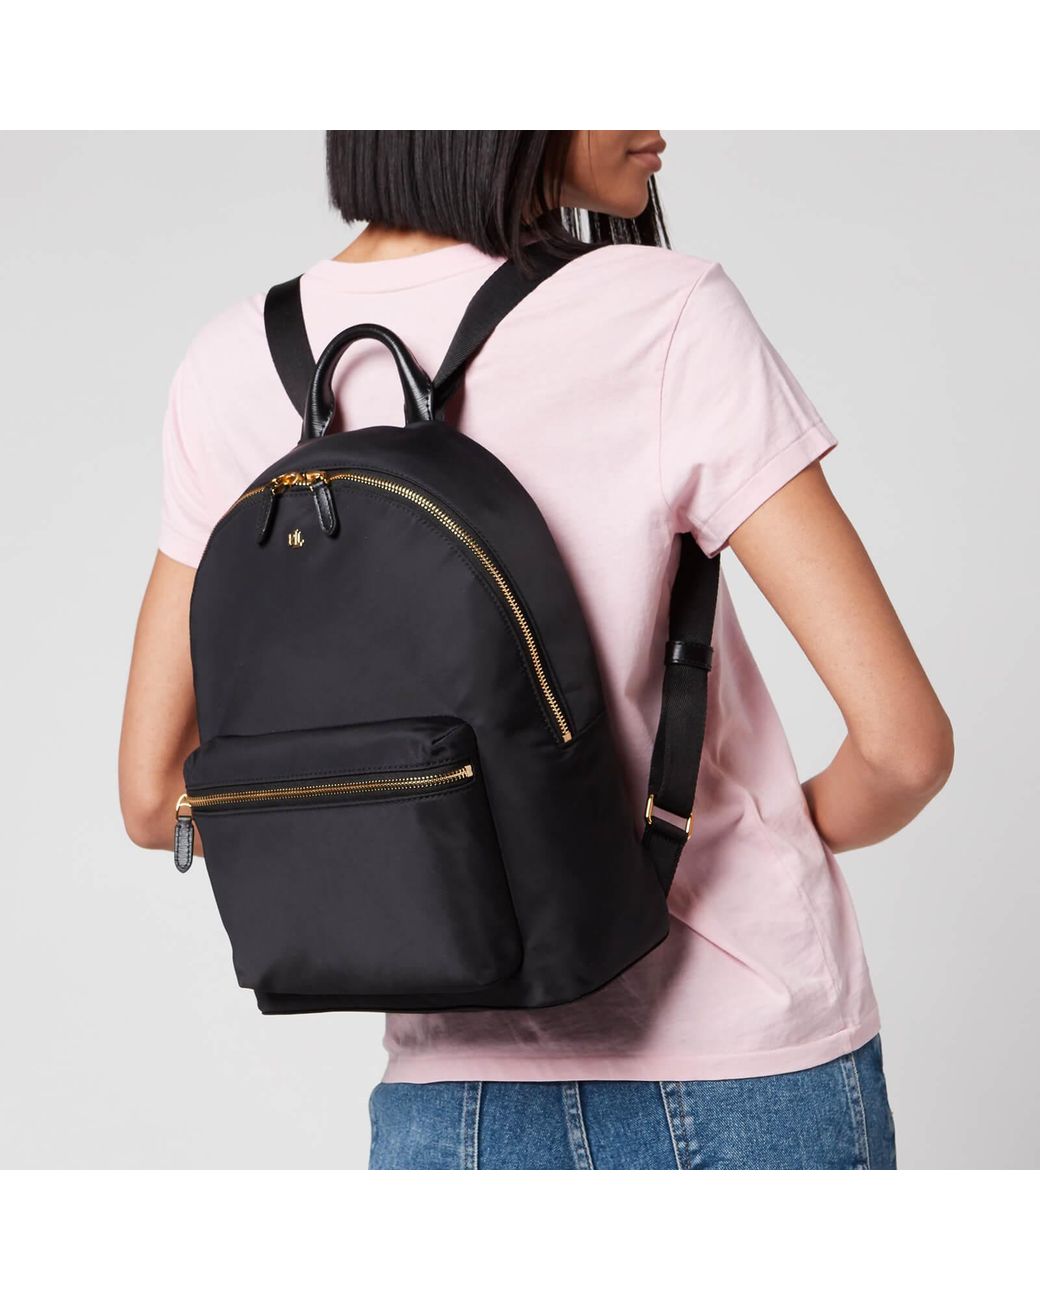 Lauren by Ralph Lauren Clarkson 27 Medium Backpack in Black | Lyst